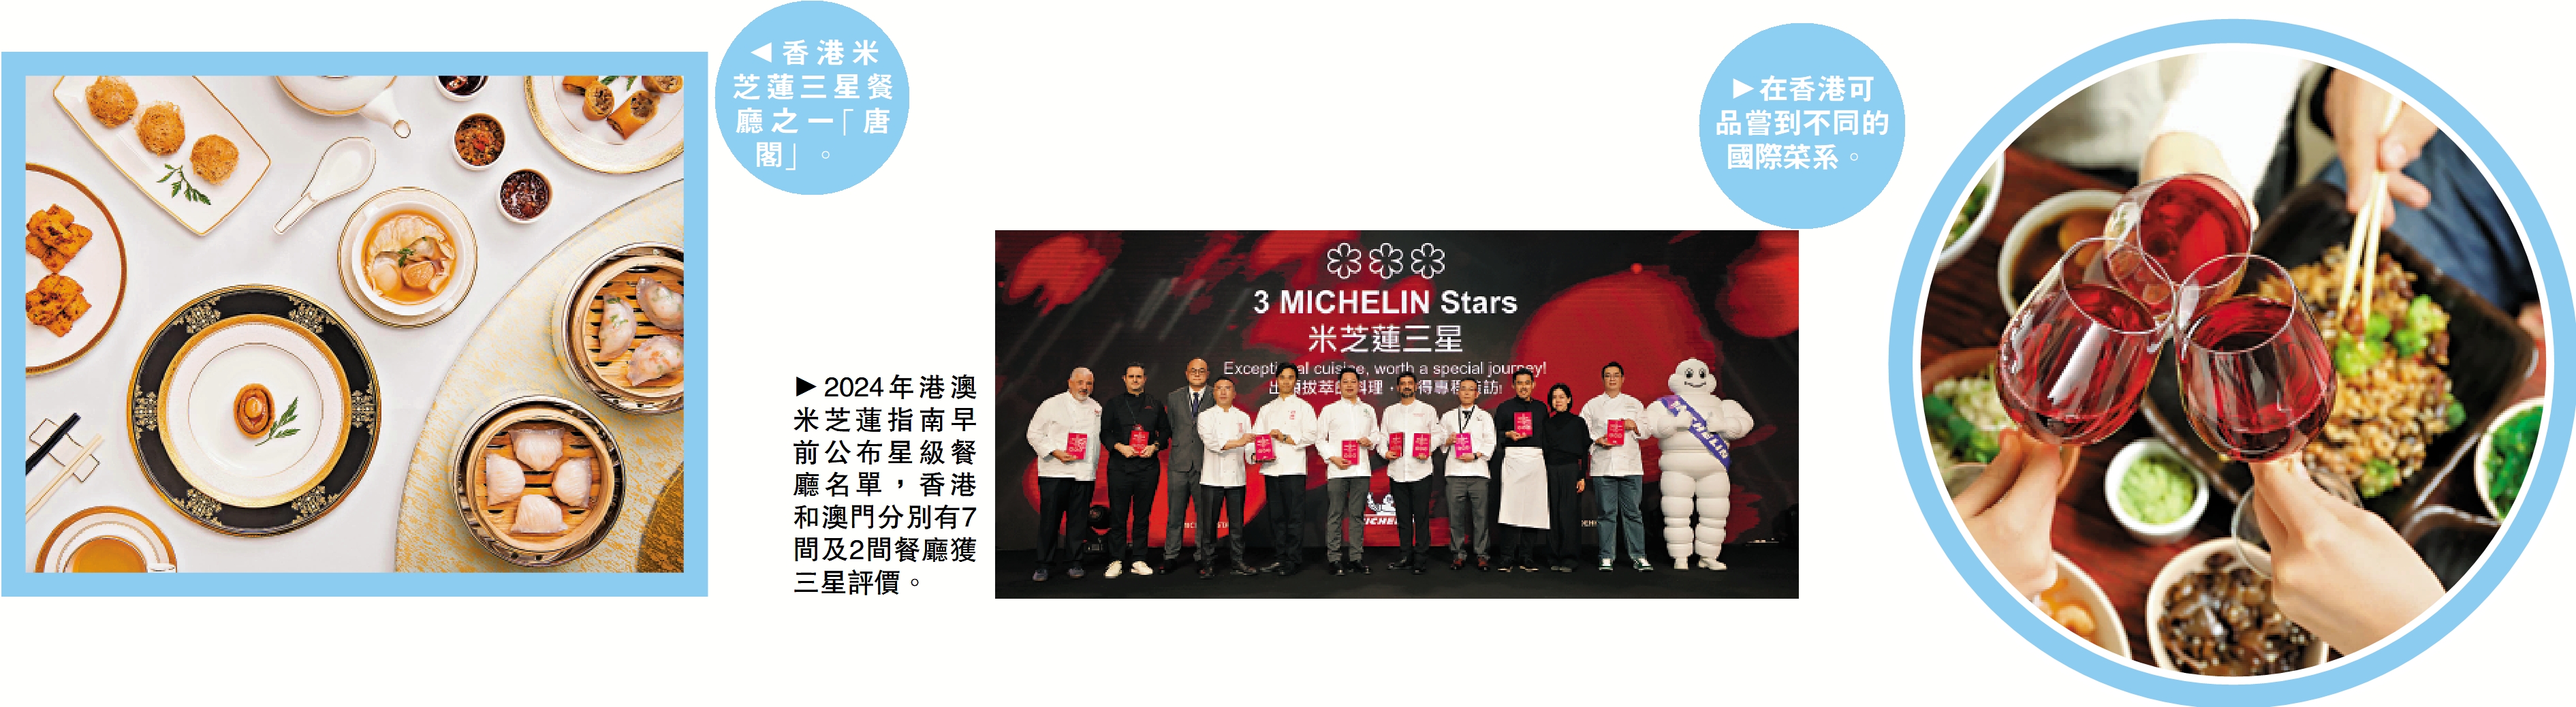 　　左圖：香港米芝蓮三星餐廳之一「唐閣」。中圖：2024年港澳米芝蓮指南早前公布星級餐廳名單，香港和澳門分別有7間及2間餐廳獲三星評價。右圖：在香港可品嘗到不同的國際菜系。